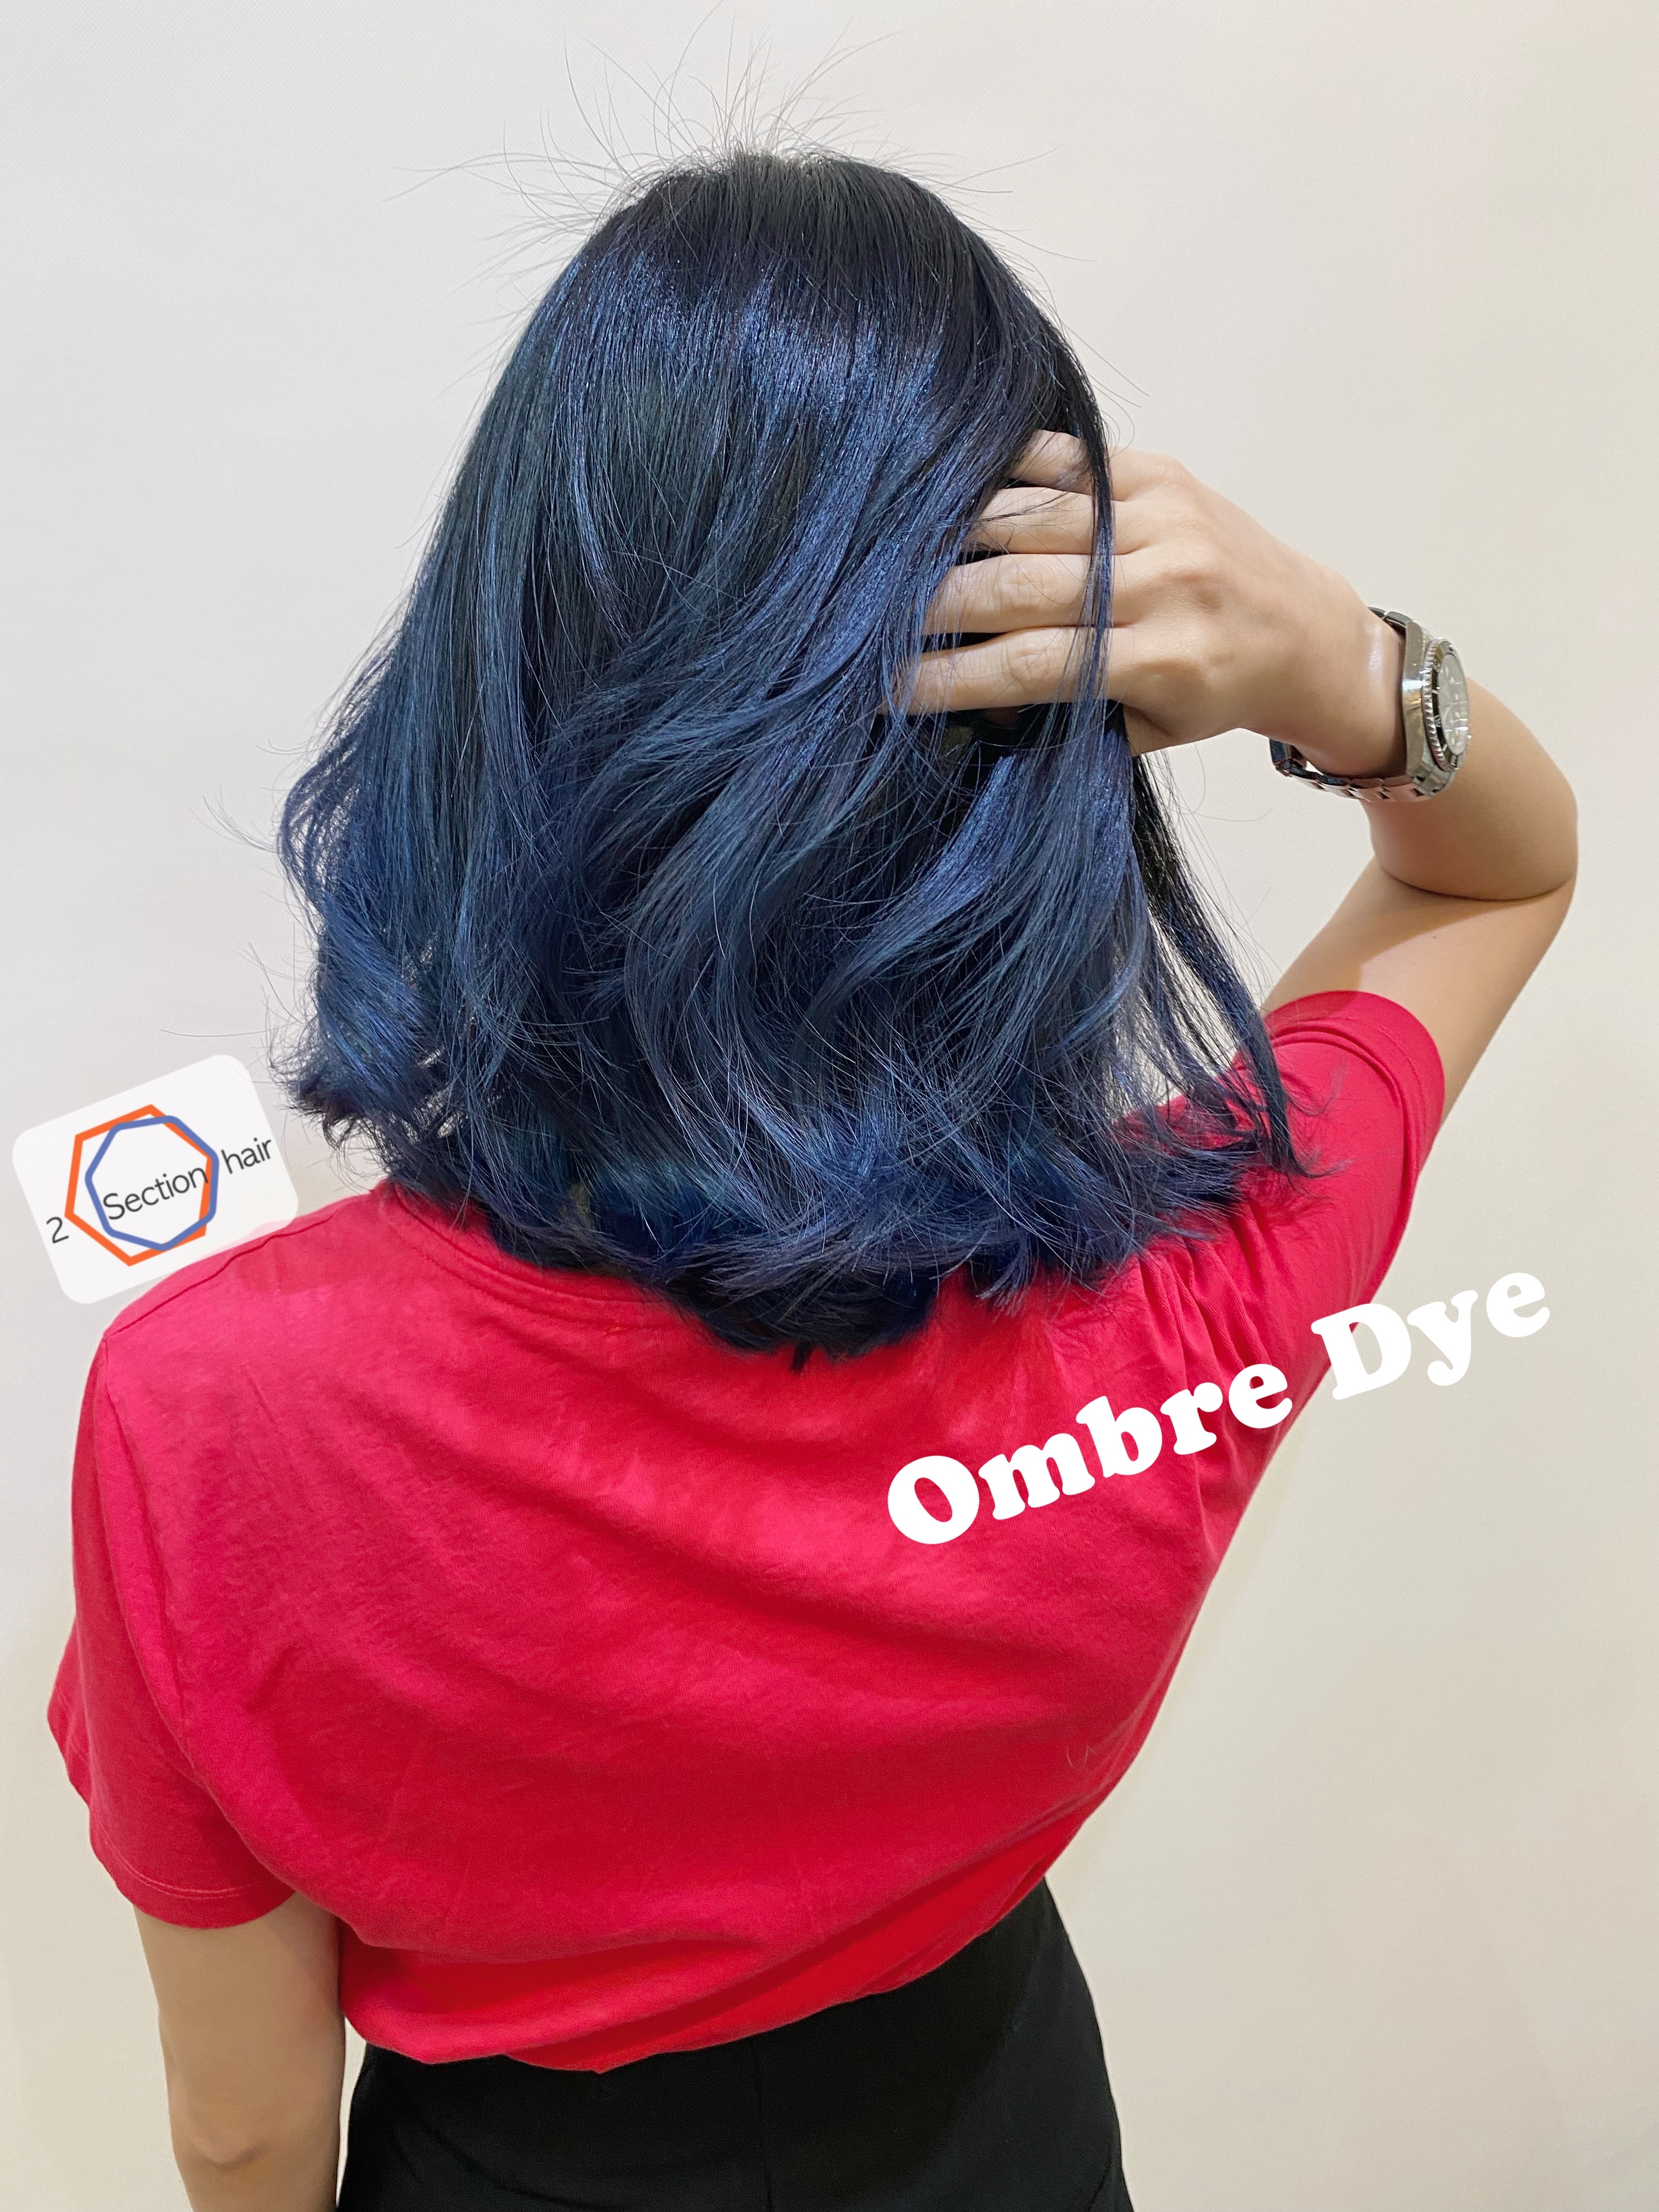 髮型作品參考:Ombré dye